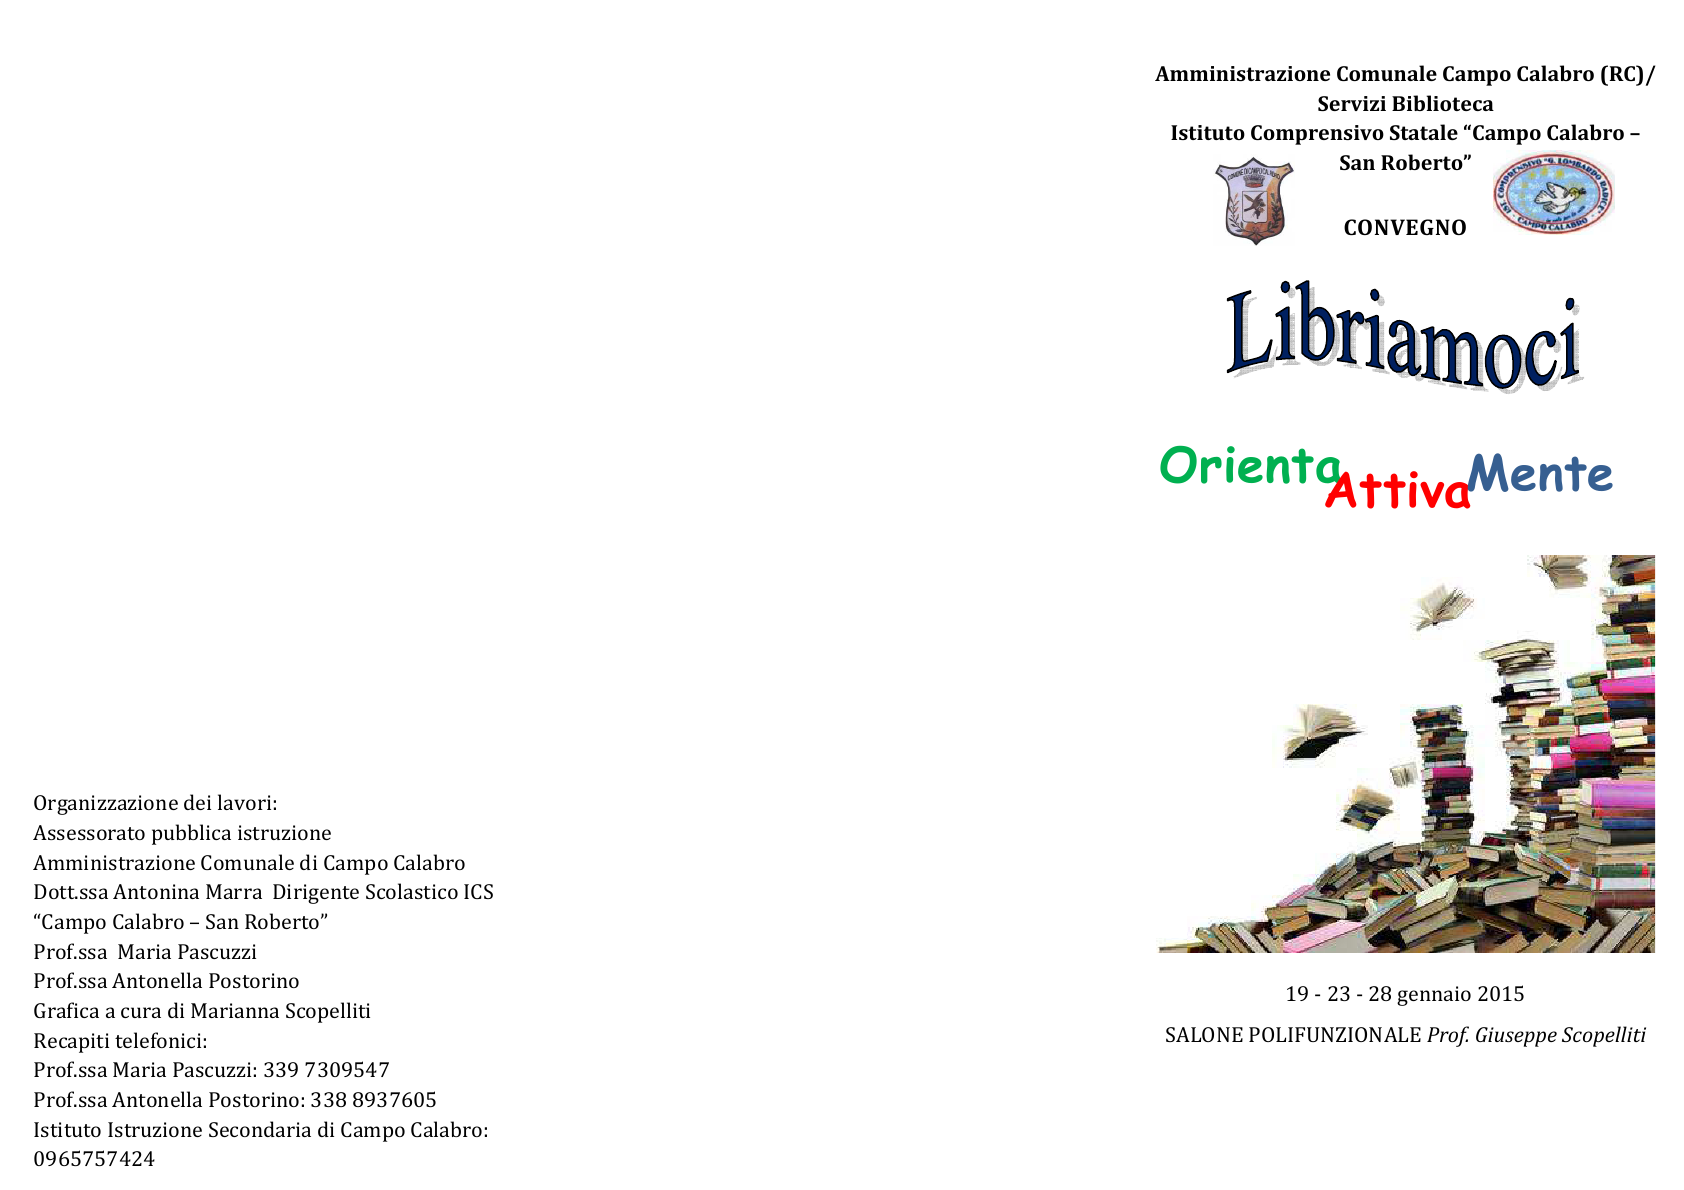 Convegno LIBRIAMOCI - 19-23-28 gennaio 2016 - Salone Polifunzionale Prof. Giuseppe Scopelliti